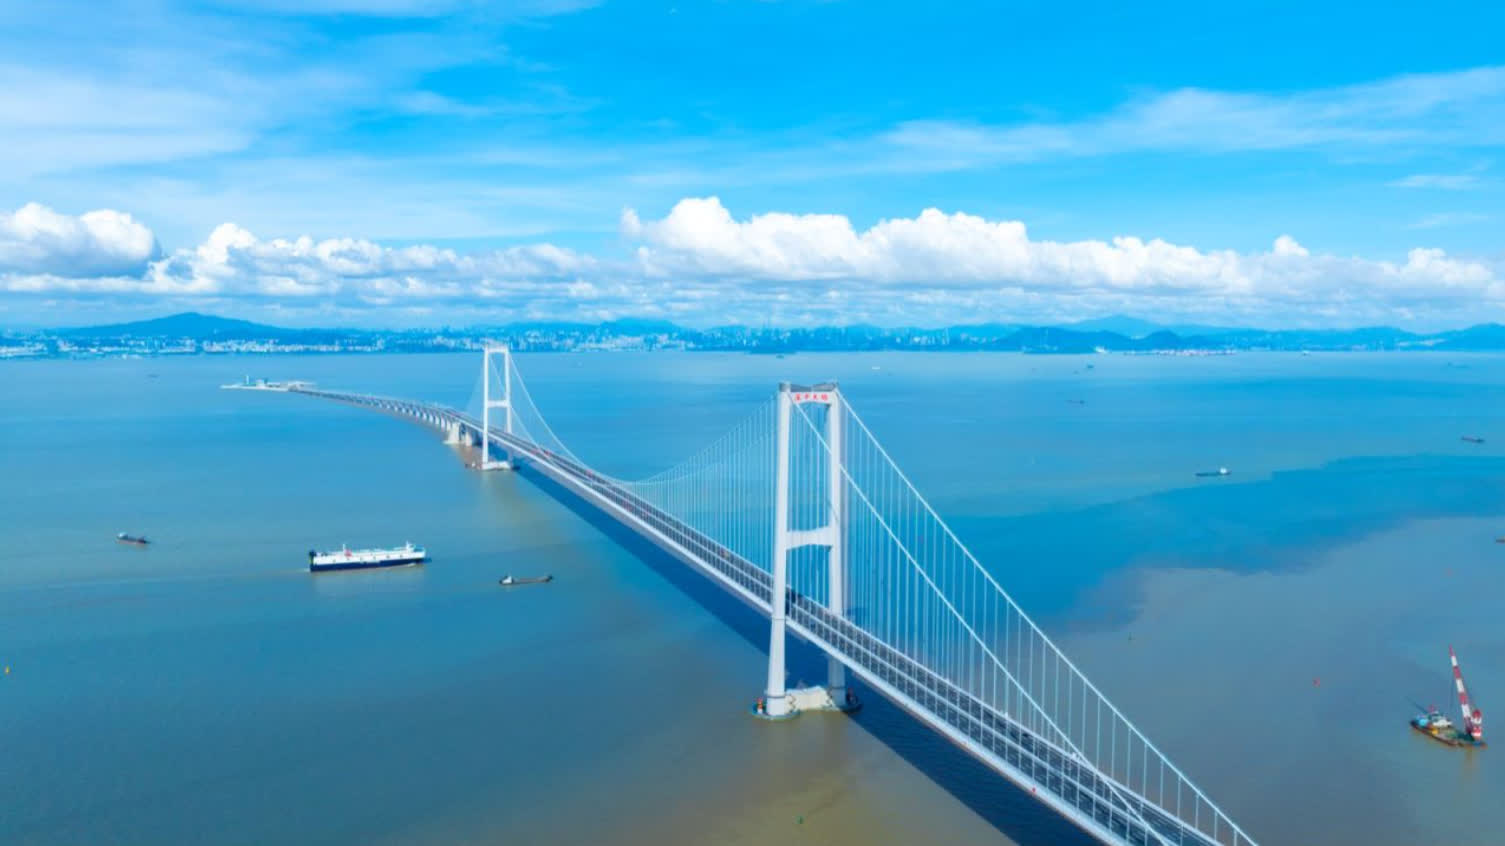 深中通道通車72小時錄逾30萬車次　佔每日珠江跨江車流量四分之一